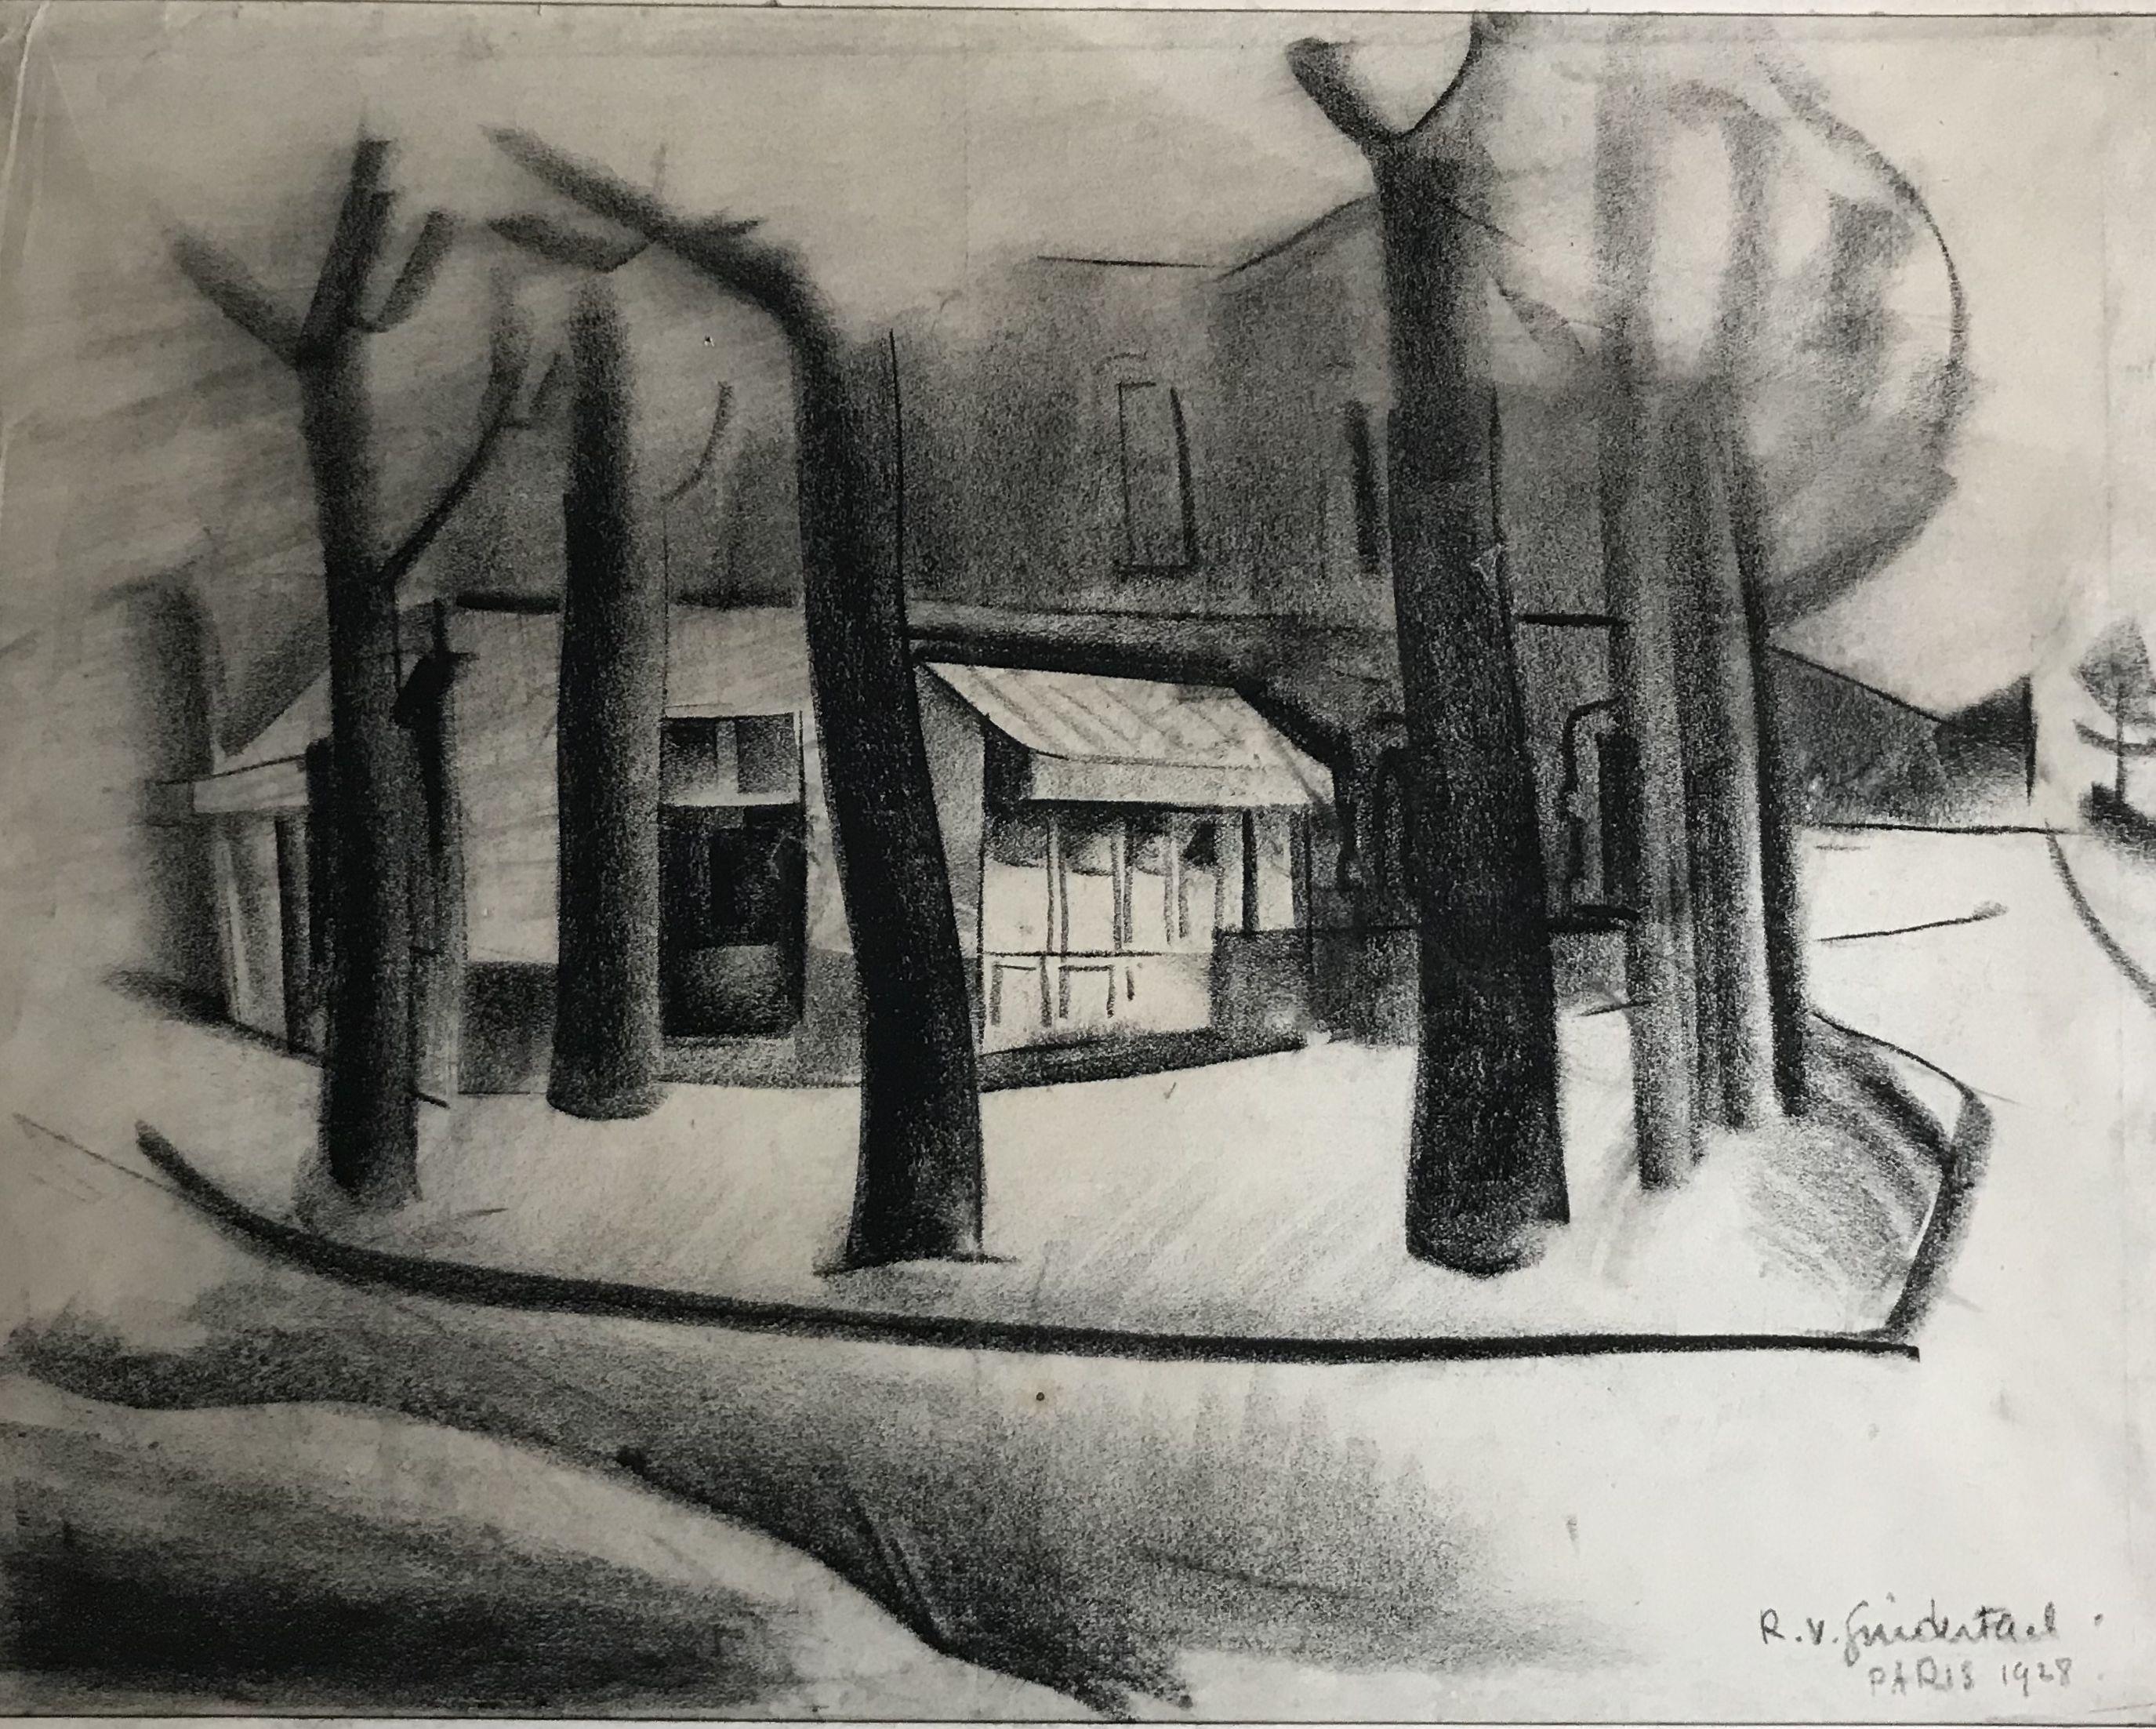 Roger VAN GINDERTAEL. Pariser Straßenansicht. Kohlefarbene Zeichnung. Signiert / datiert 1928.